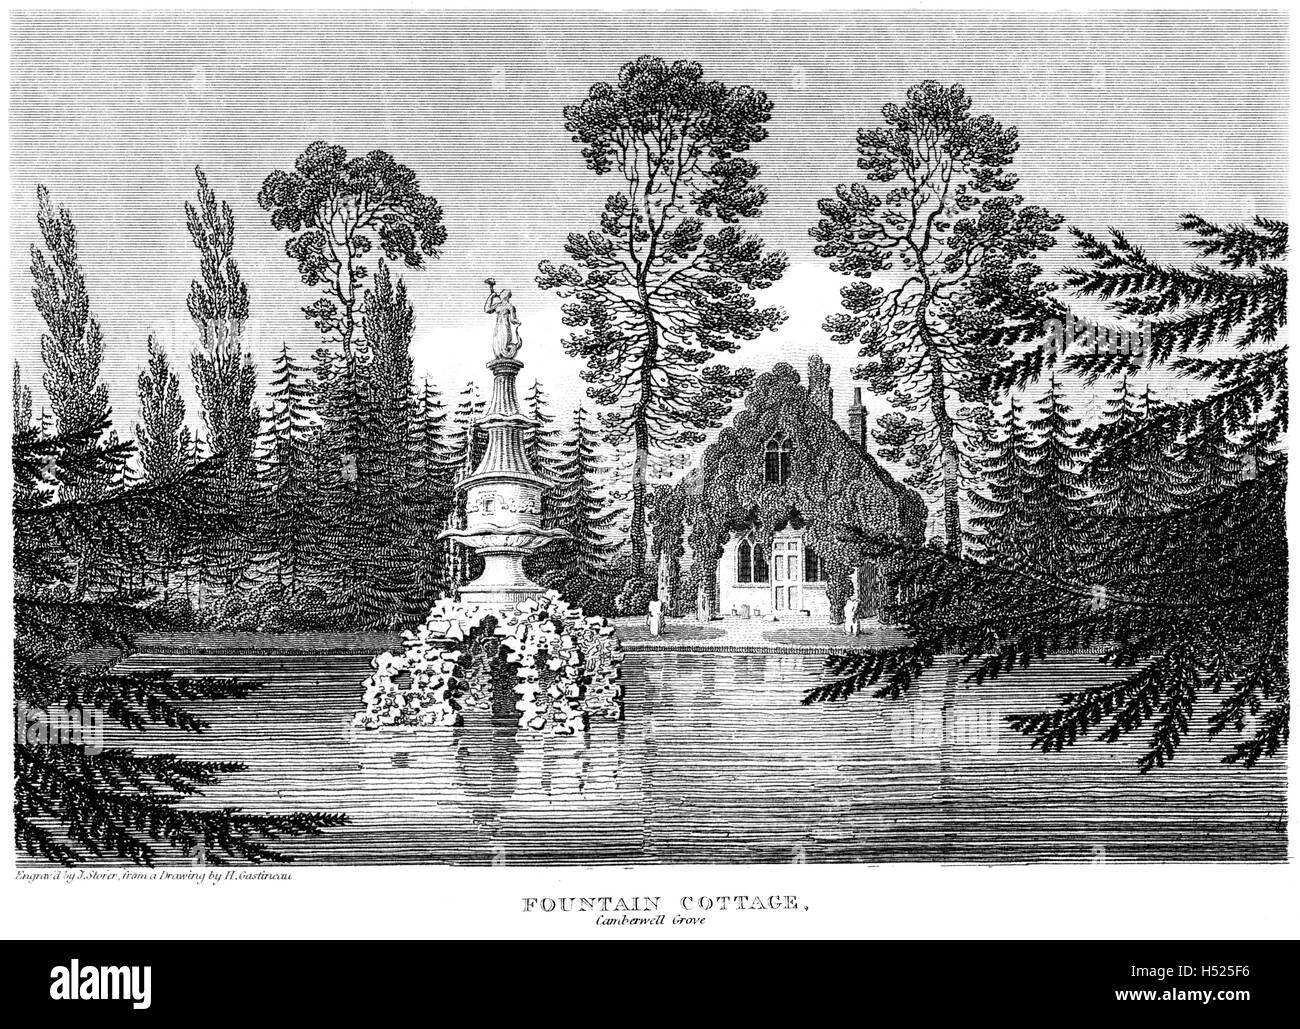 Eine Gravur von Fountain Cottage, Camberwell, Surrey, gescannt mit hoher Auflösung aus einem Buch, das 1812 gedruckt wurde. Glaubte, dass es keine Urheberrechte gibt Stockfoto